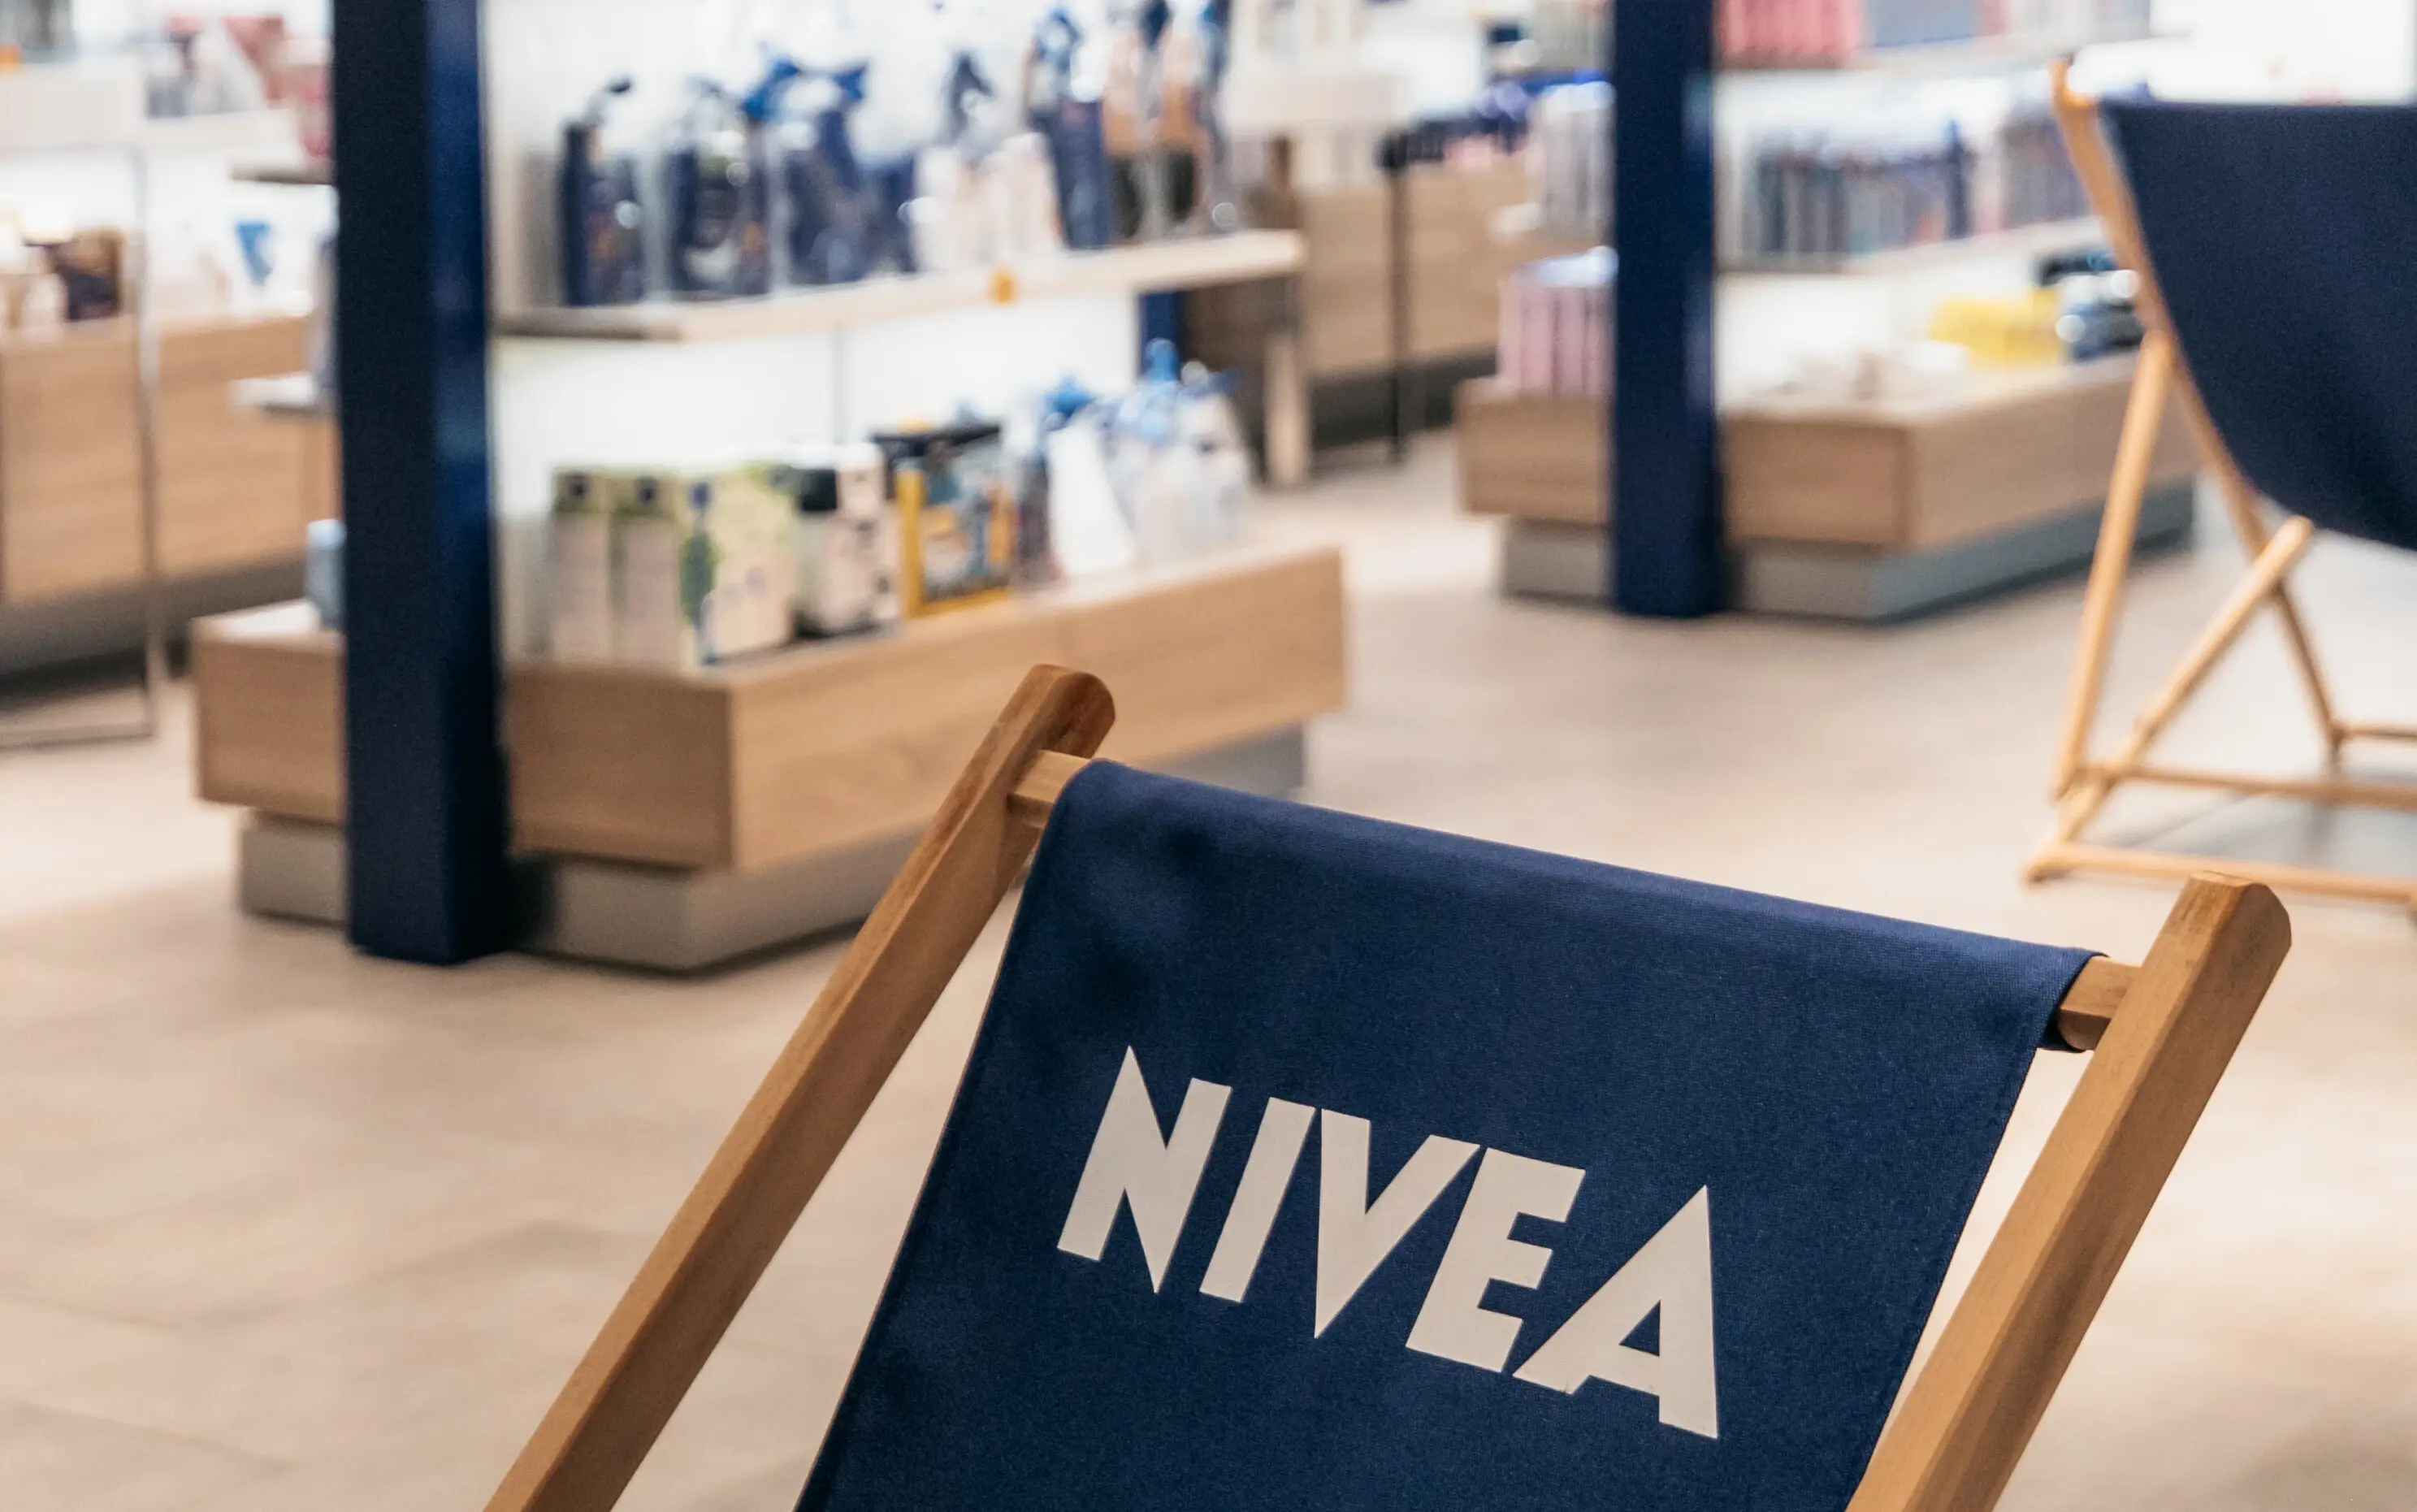 In einem Verkaufsraum mit anthrazitfarbenen Fließen und weißen und dunkelblauen Wänden sind diverse NIVEA Produkte in den Regalen und verschiedenen Verkaufsaufstellern zu erkennen.